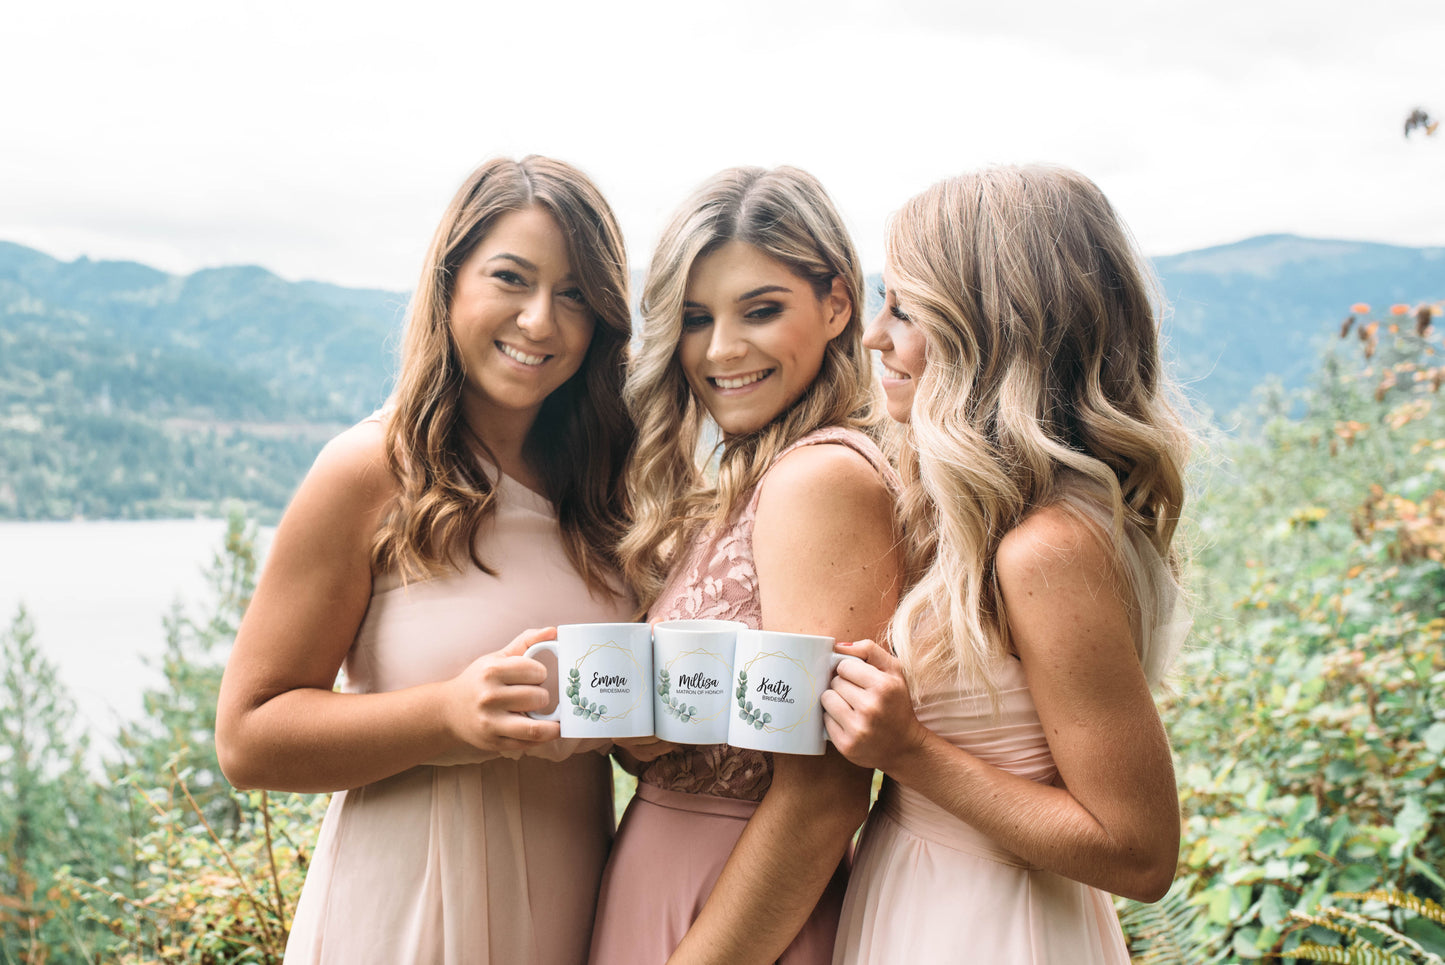 Bridesmaid Proposal Mug